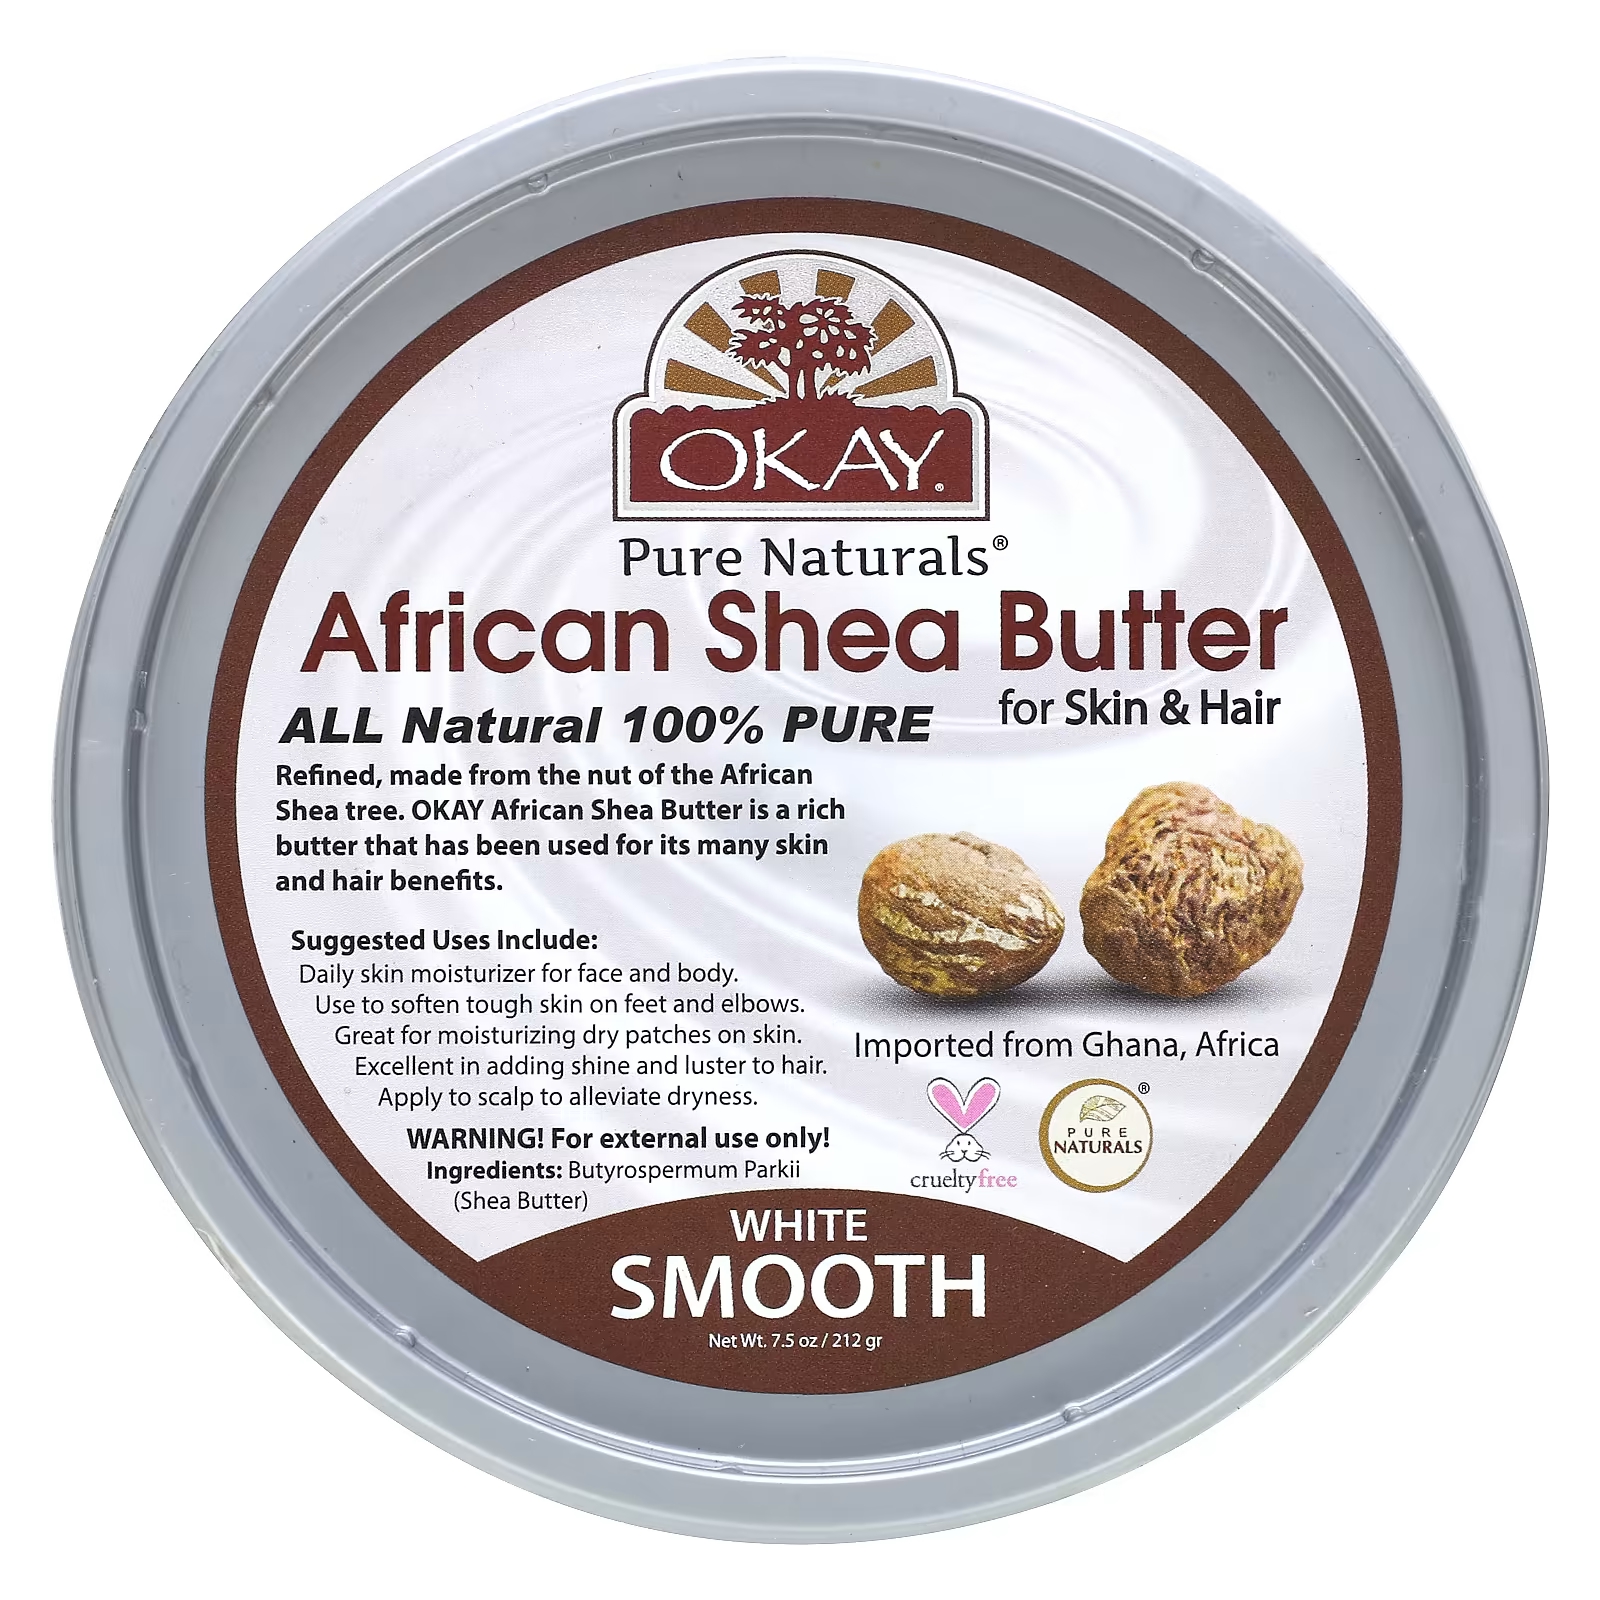 Африканское масло ши Okay Pure Naturals для кожи и волос, 212 г кокосовое масло okay pure naturals для тела 198 г